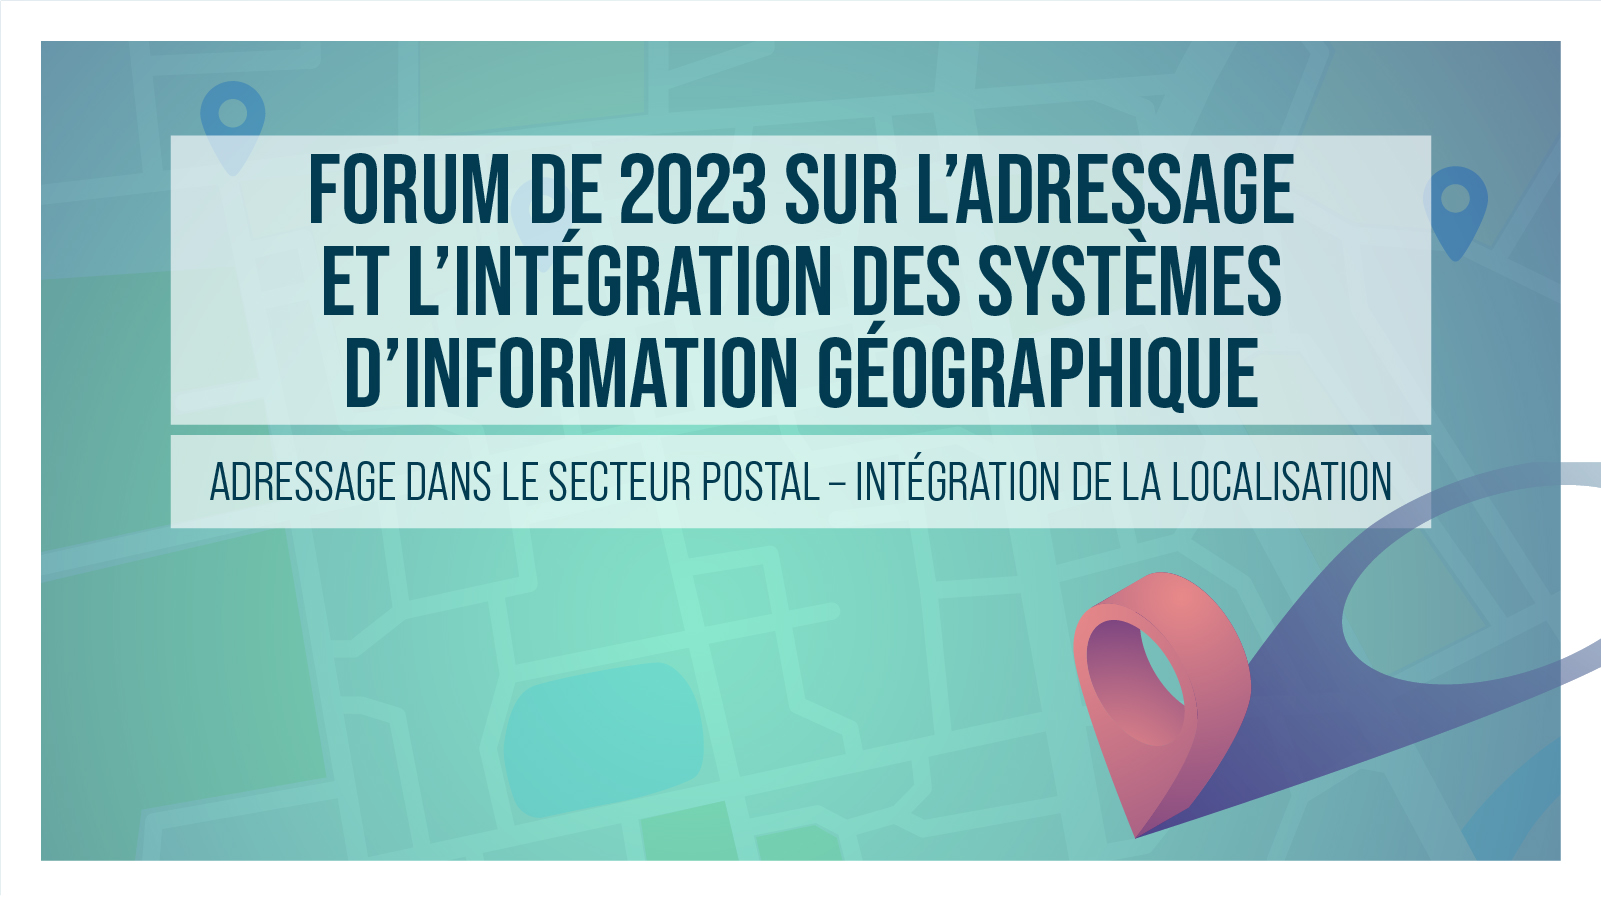 Forum de 2023 sur l’adressage et l’intégration des SIG